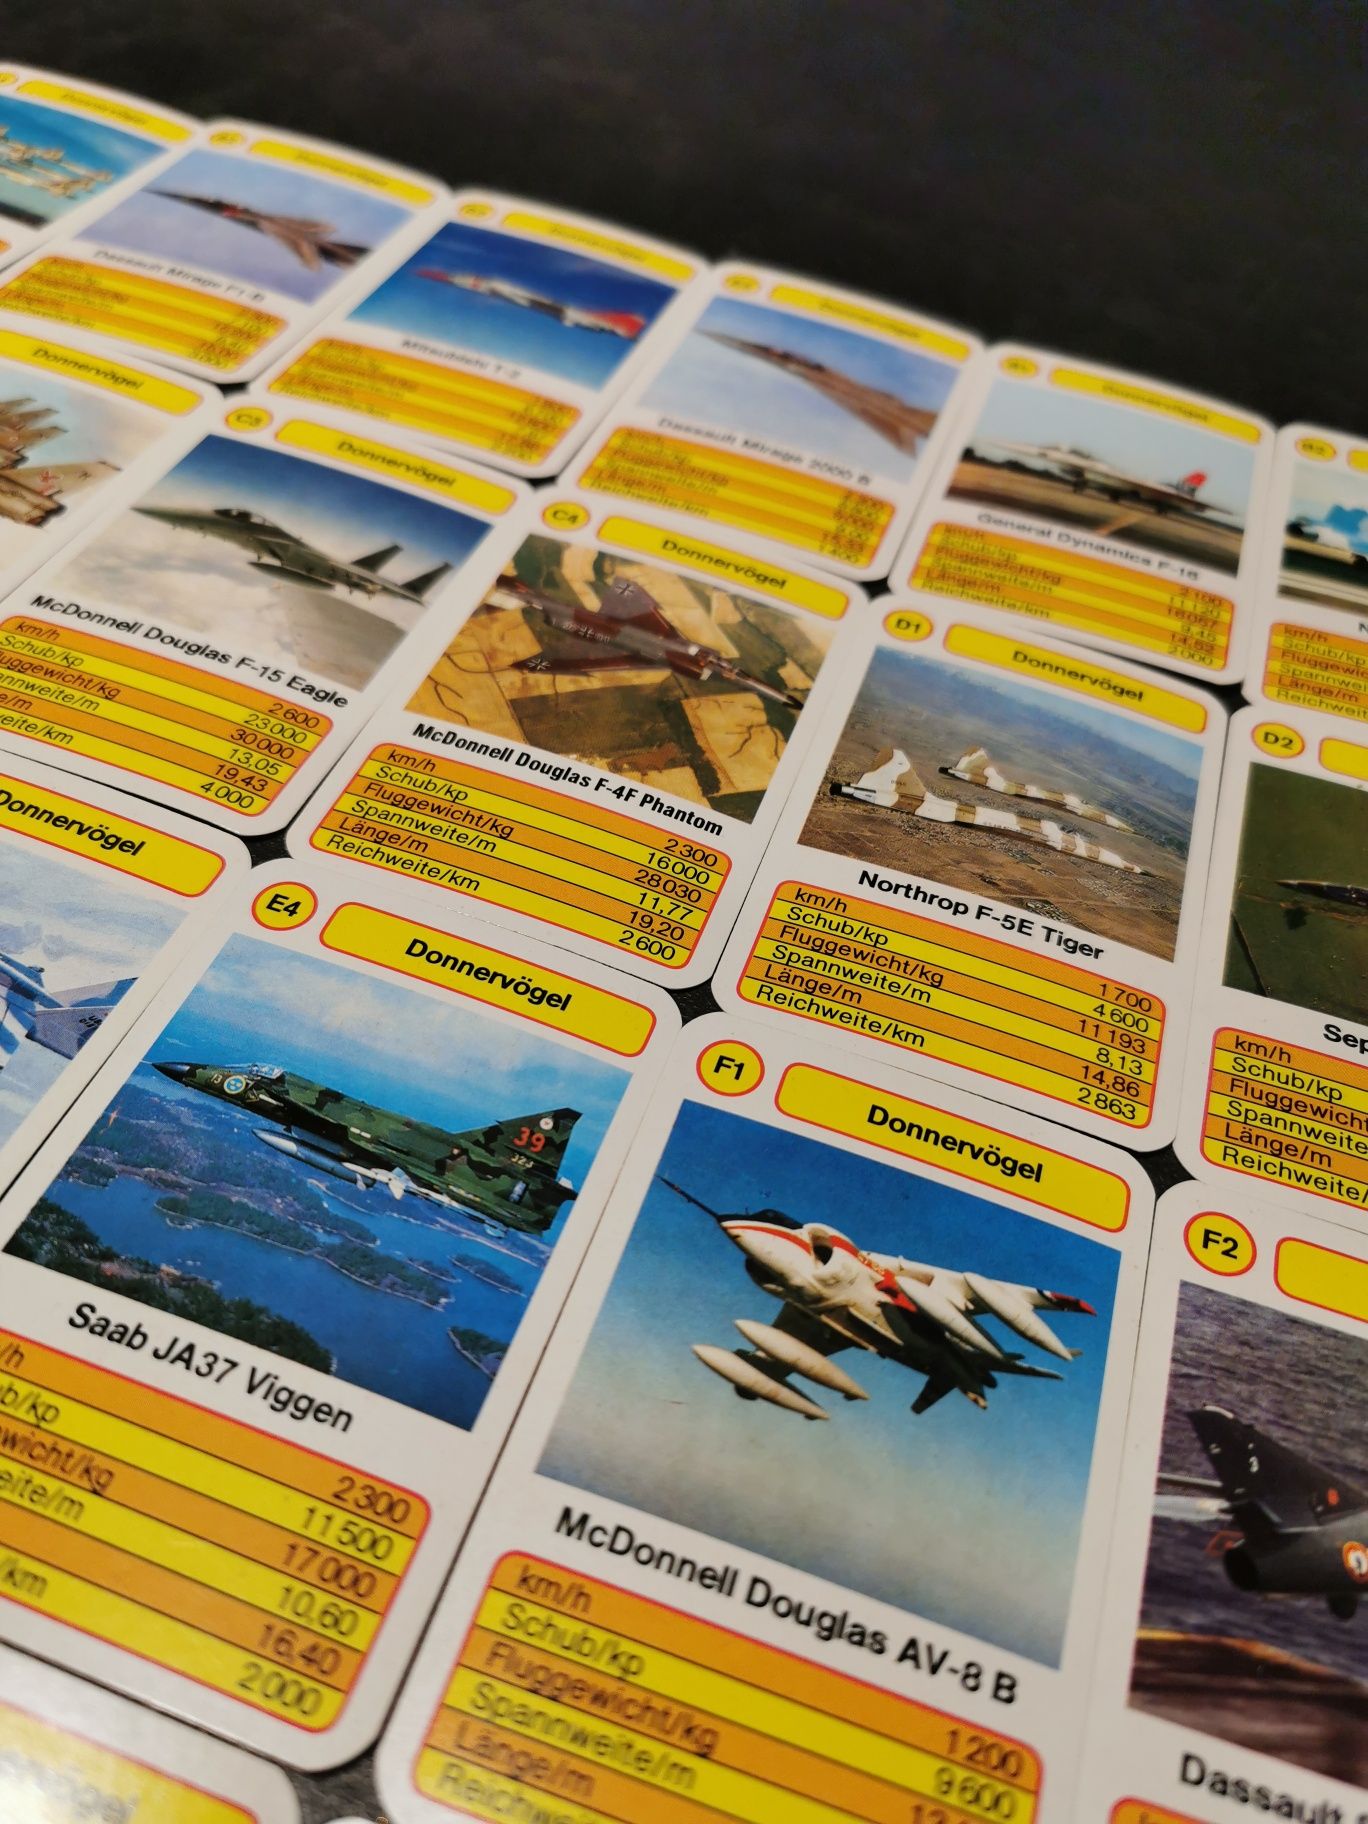 Lotnictwo, samoloty, myśliwce - karty kolekcjonerskie